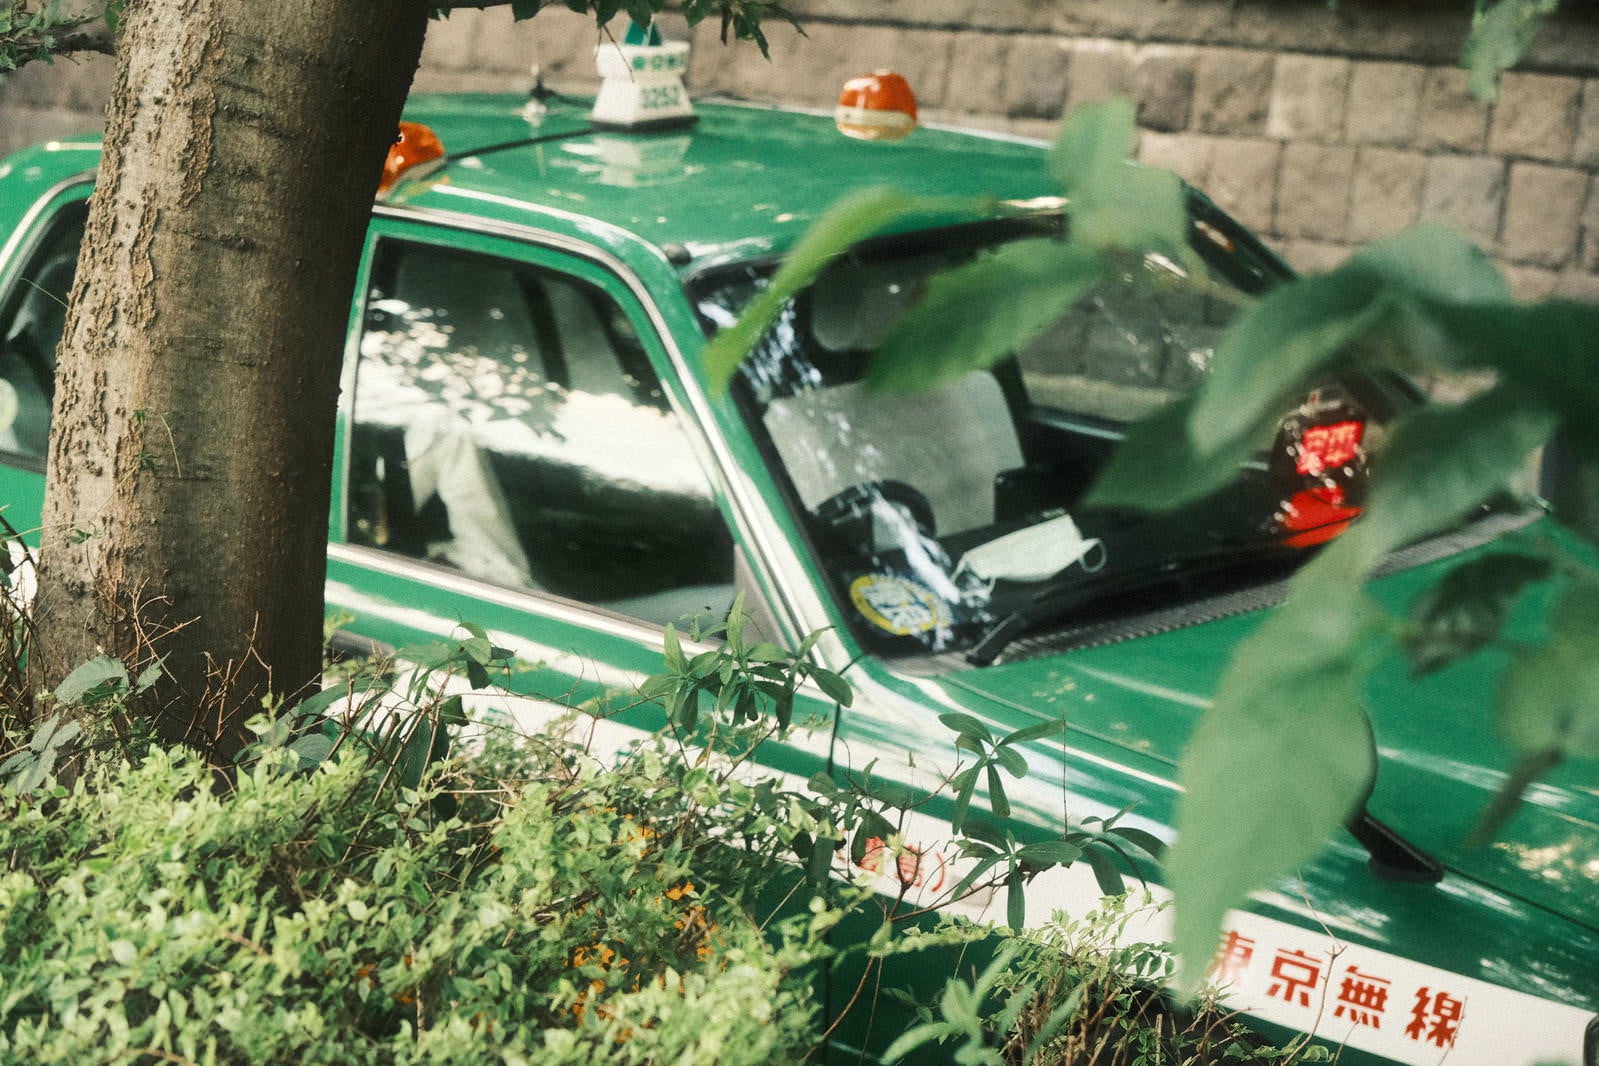 「木陰に停車して休憩するタクシー」の写真